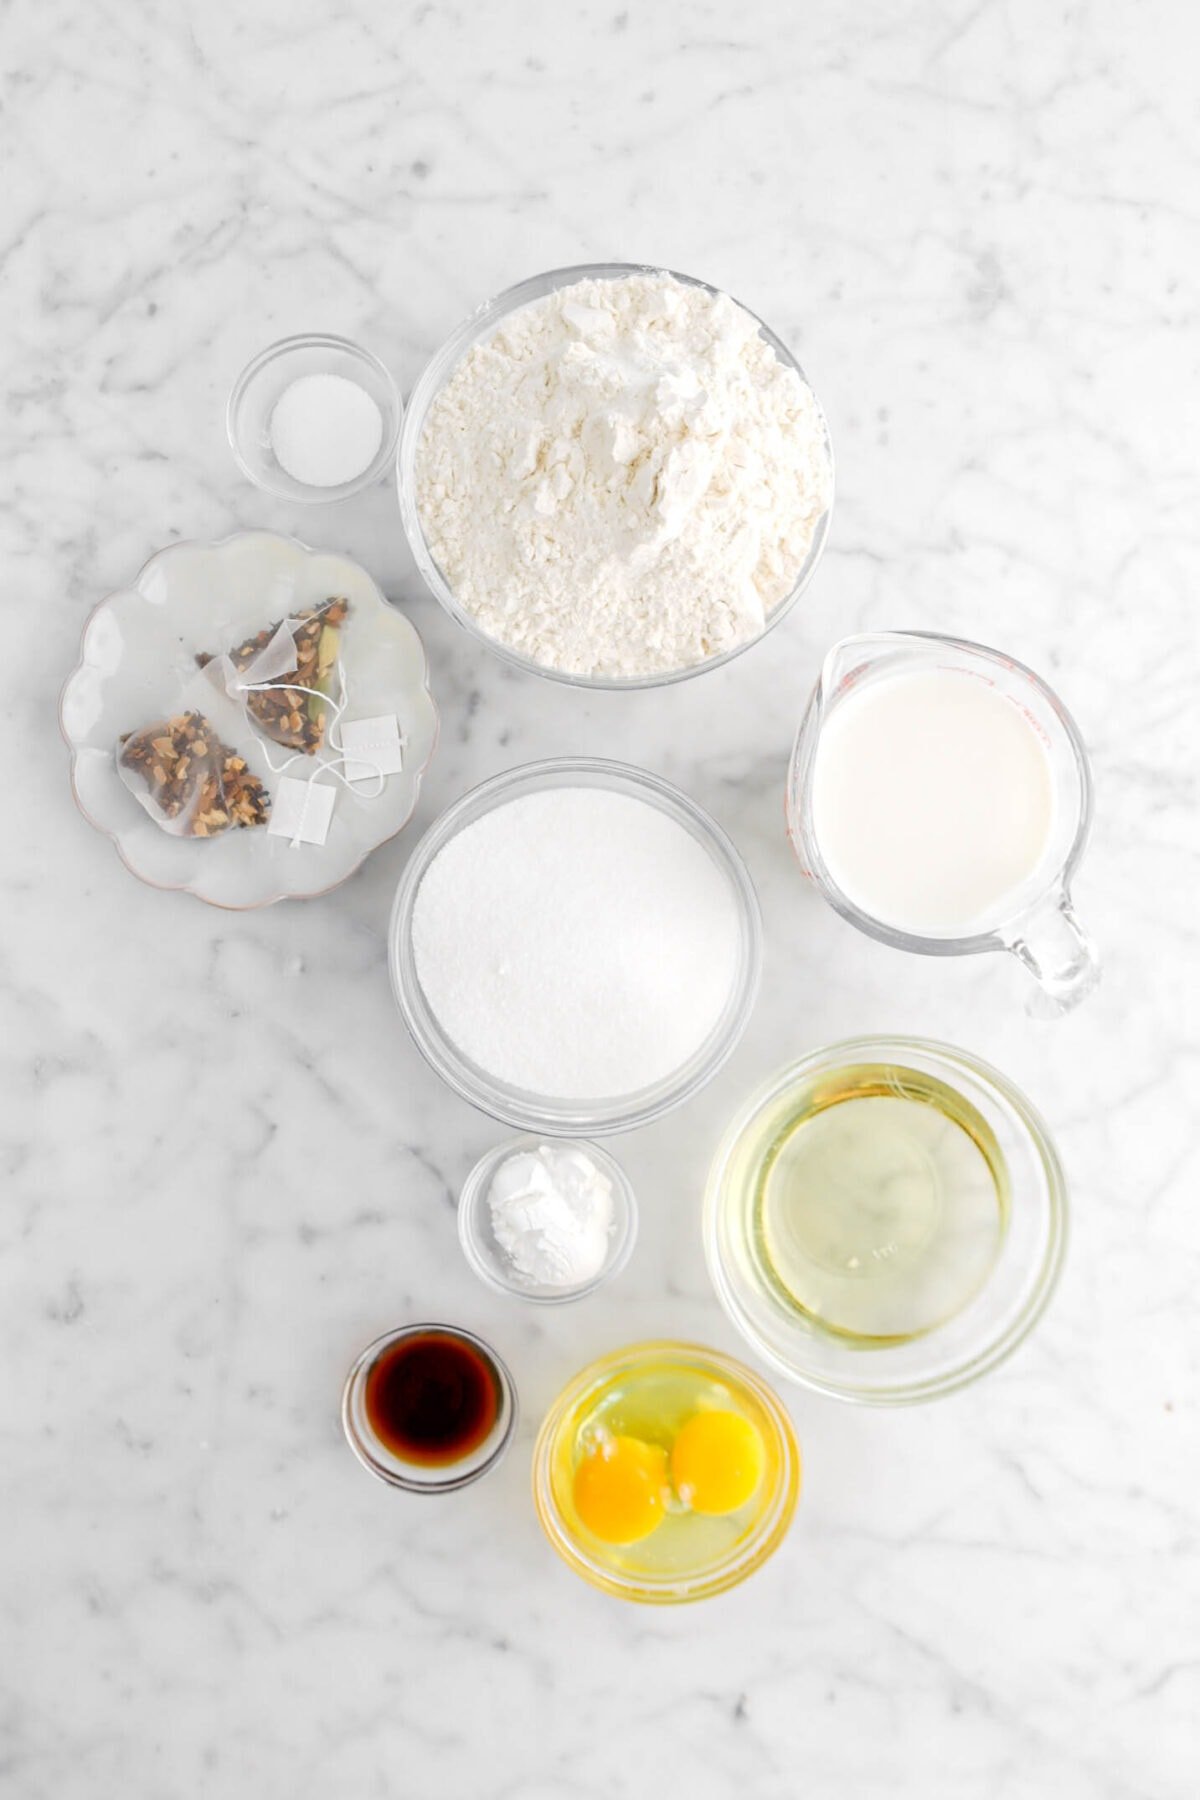 salt, flour, chai tea bags, sugar, milk, baking powder, vanilla, eggs, and oil on marble surface